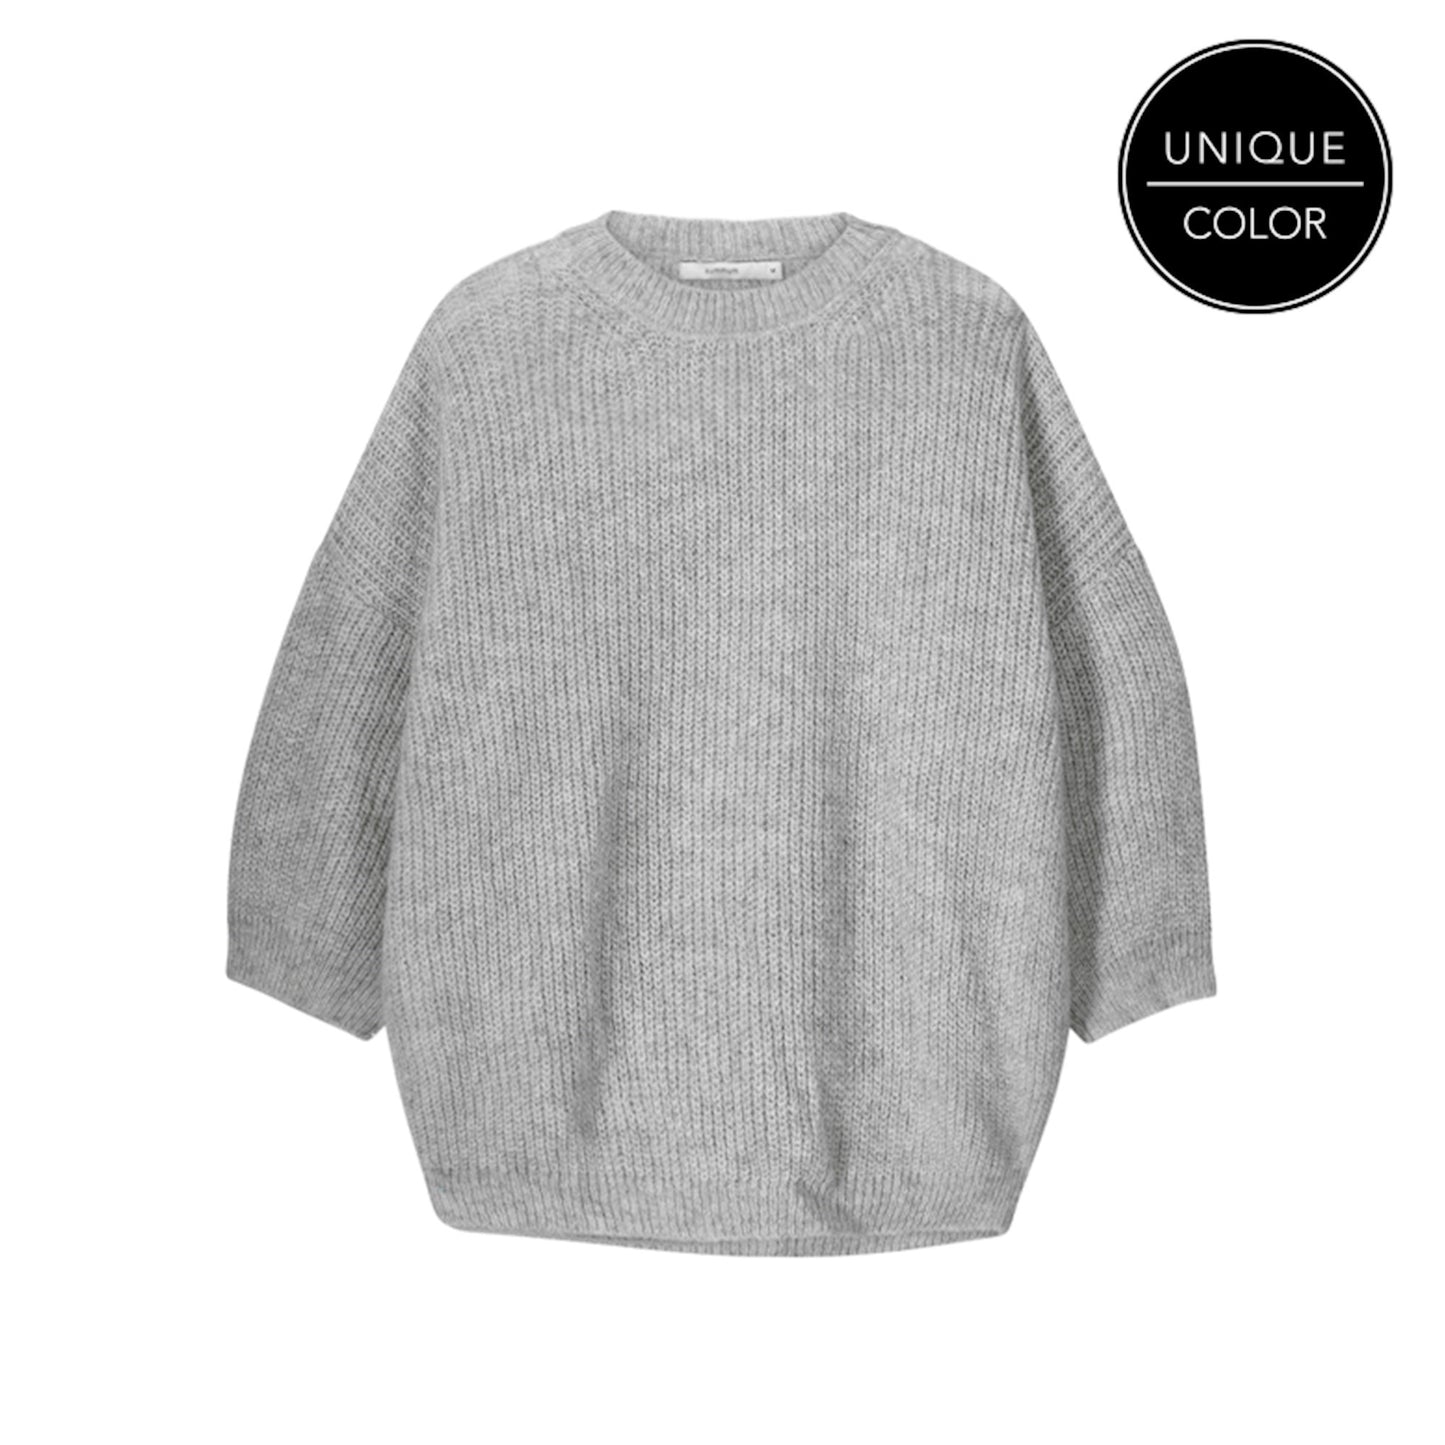 Summum | sweater melange mohair blend knit Fog